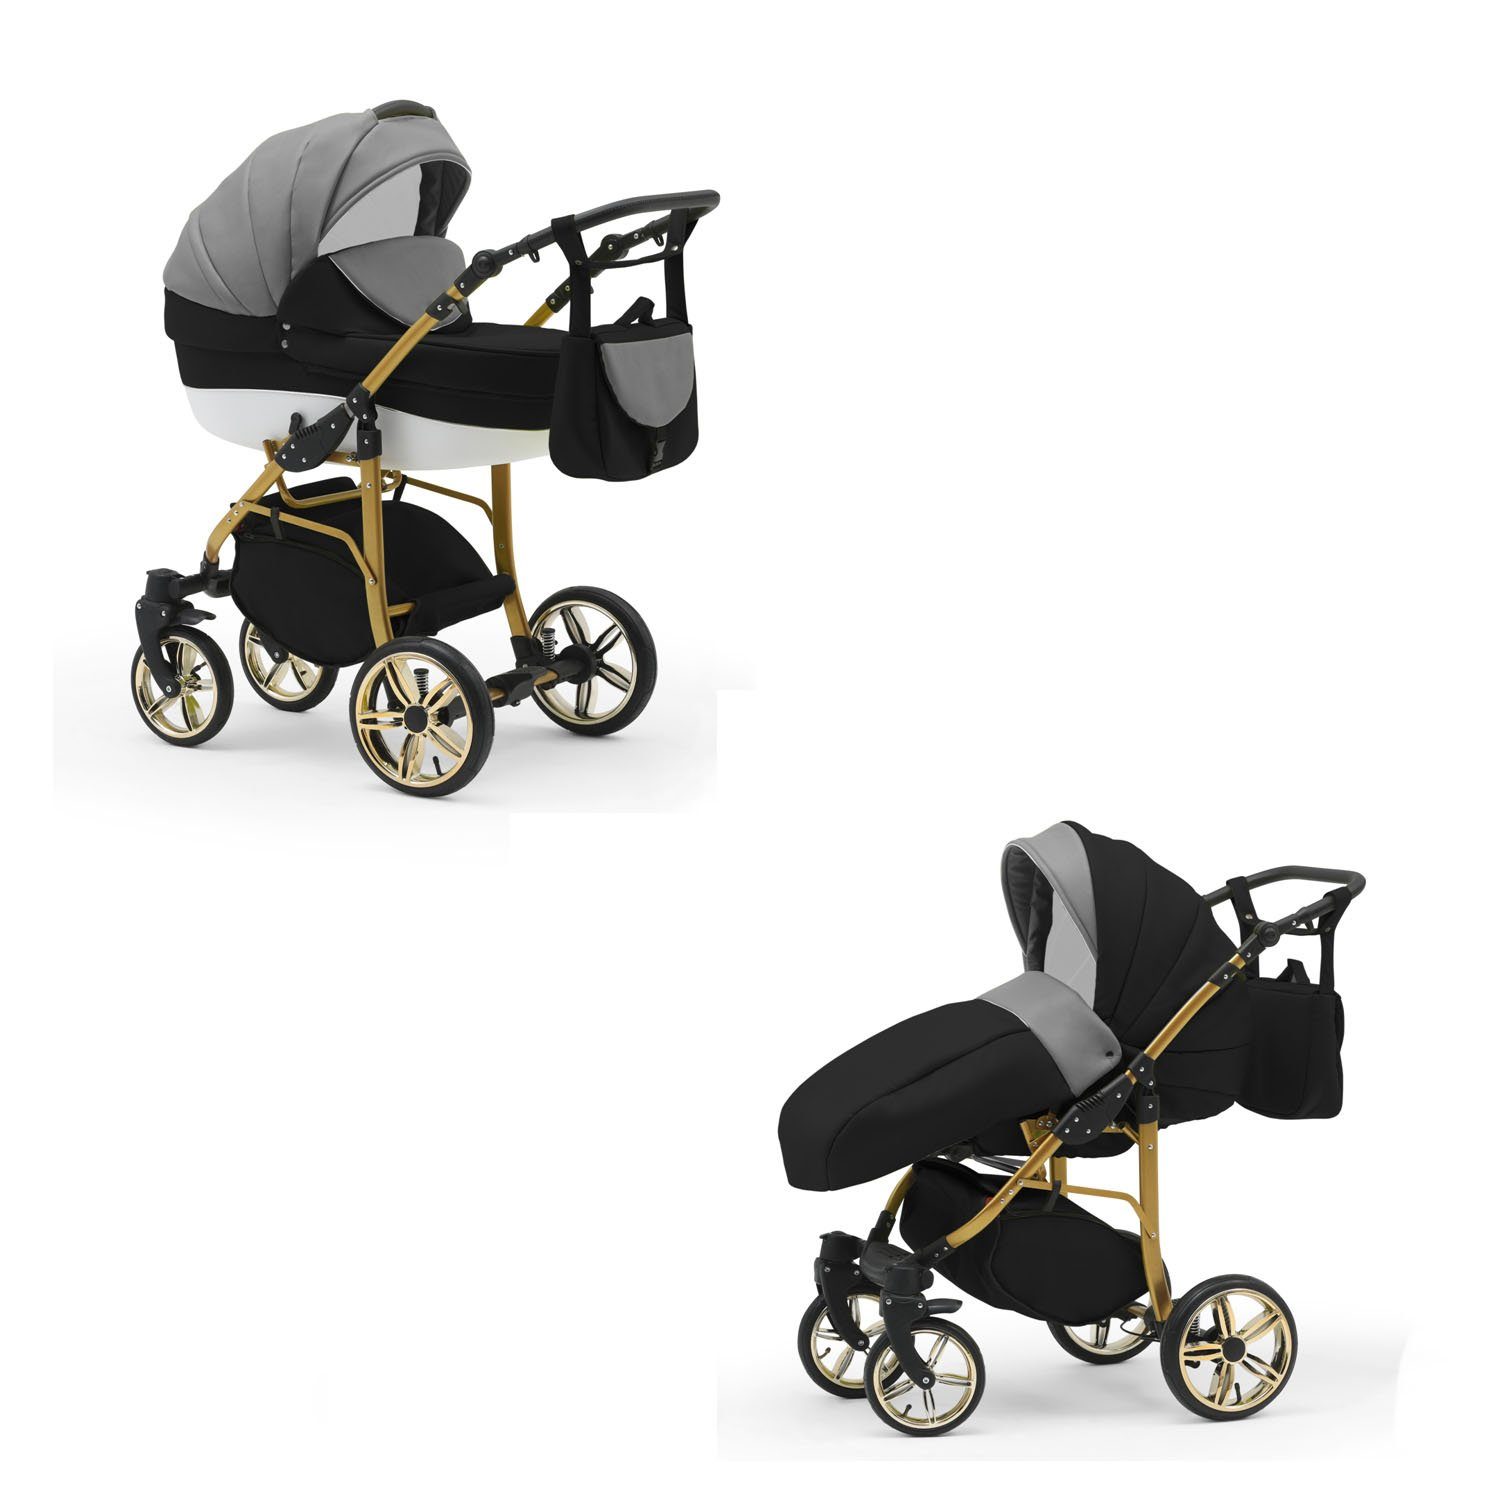 Kinderwagen-Set 2 Gold in 1 babies-on-wheels - 46 Kombi-Kinderwagen in ECO Cosmo Farben Teile Grau-Schwarz-Weiß - 13